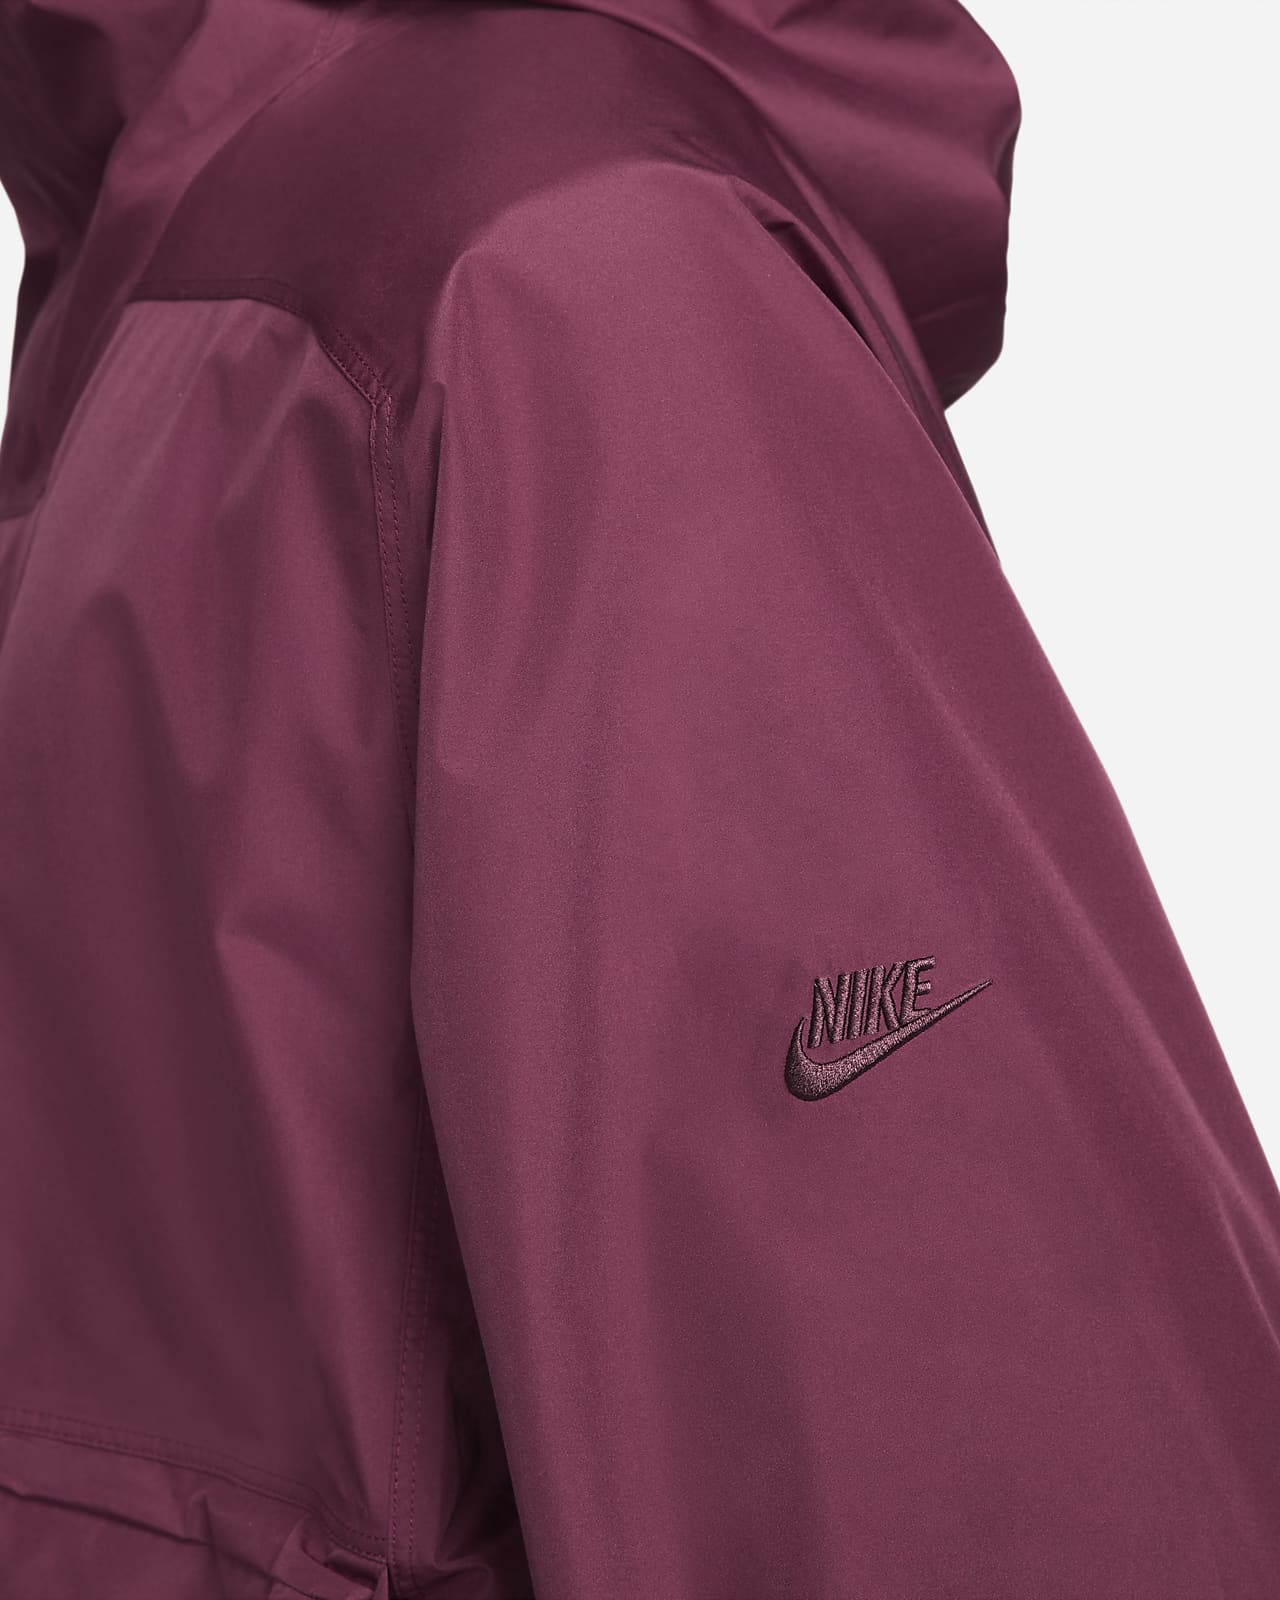 Nike Sportswear Storm-FIT ADV Tech Pack GORE-TEX Men's Hooded Jacket